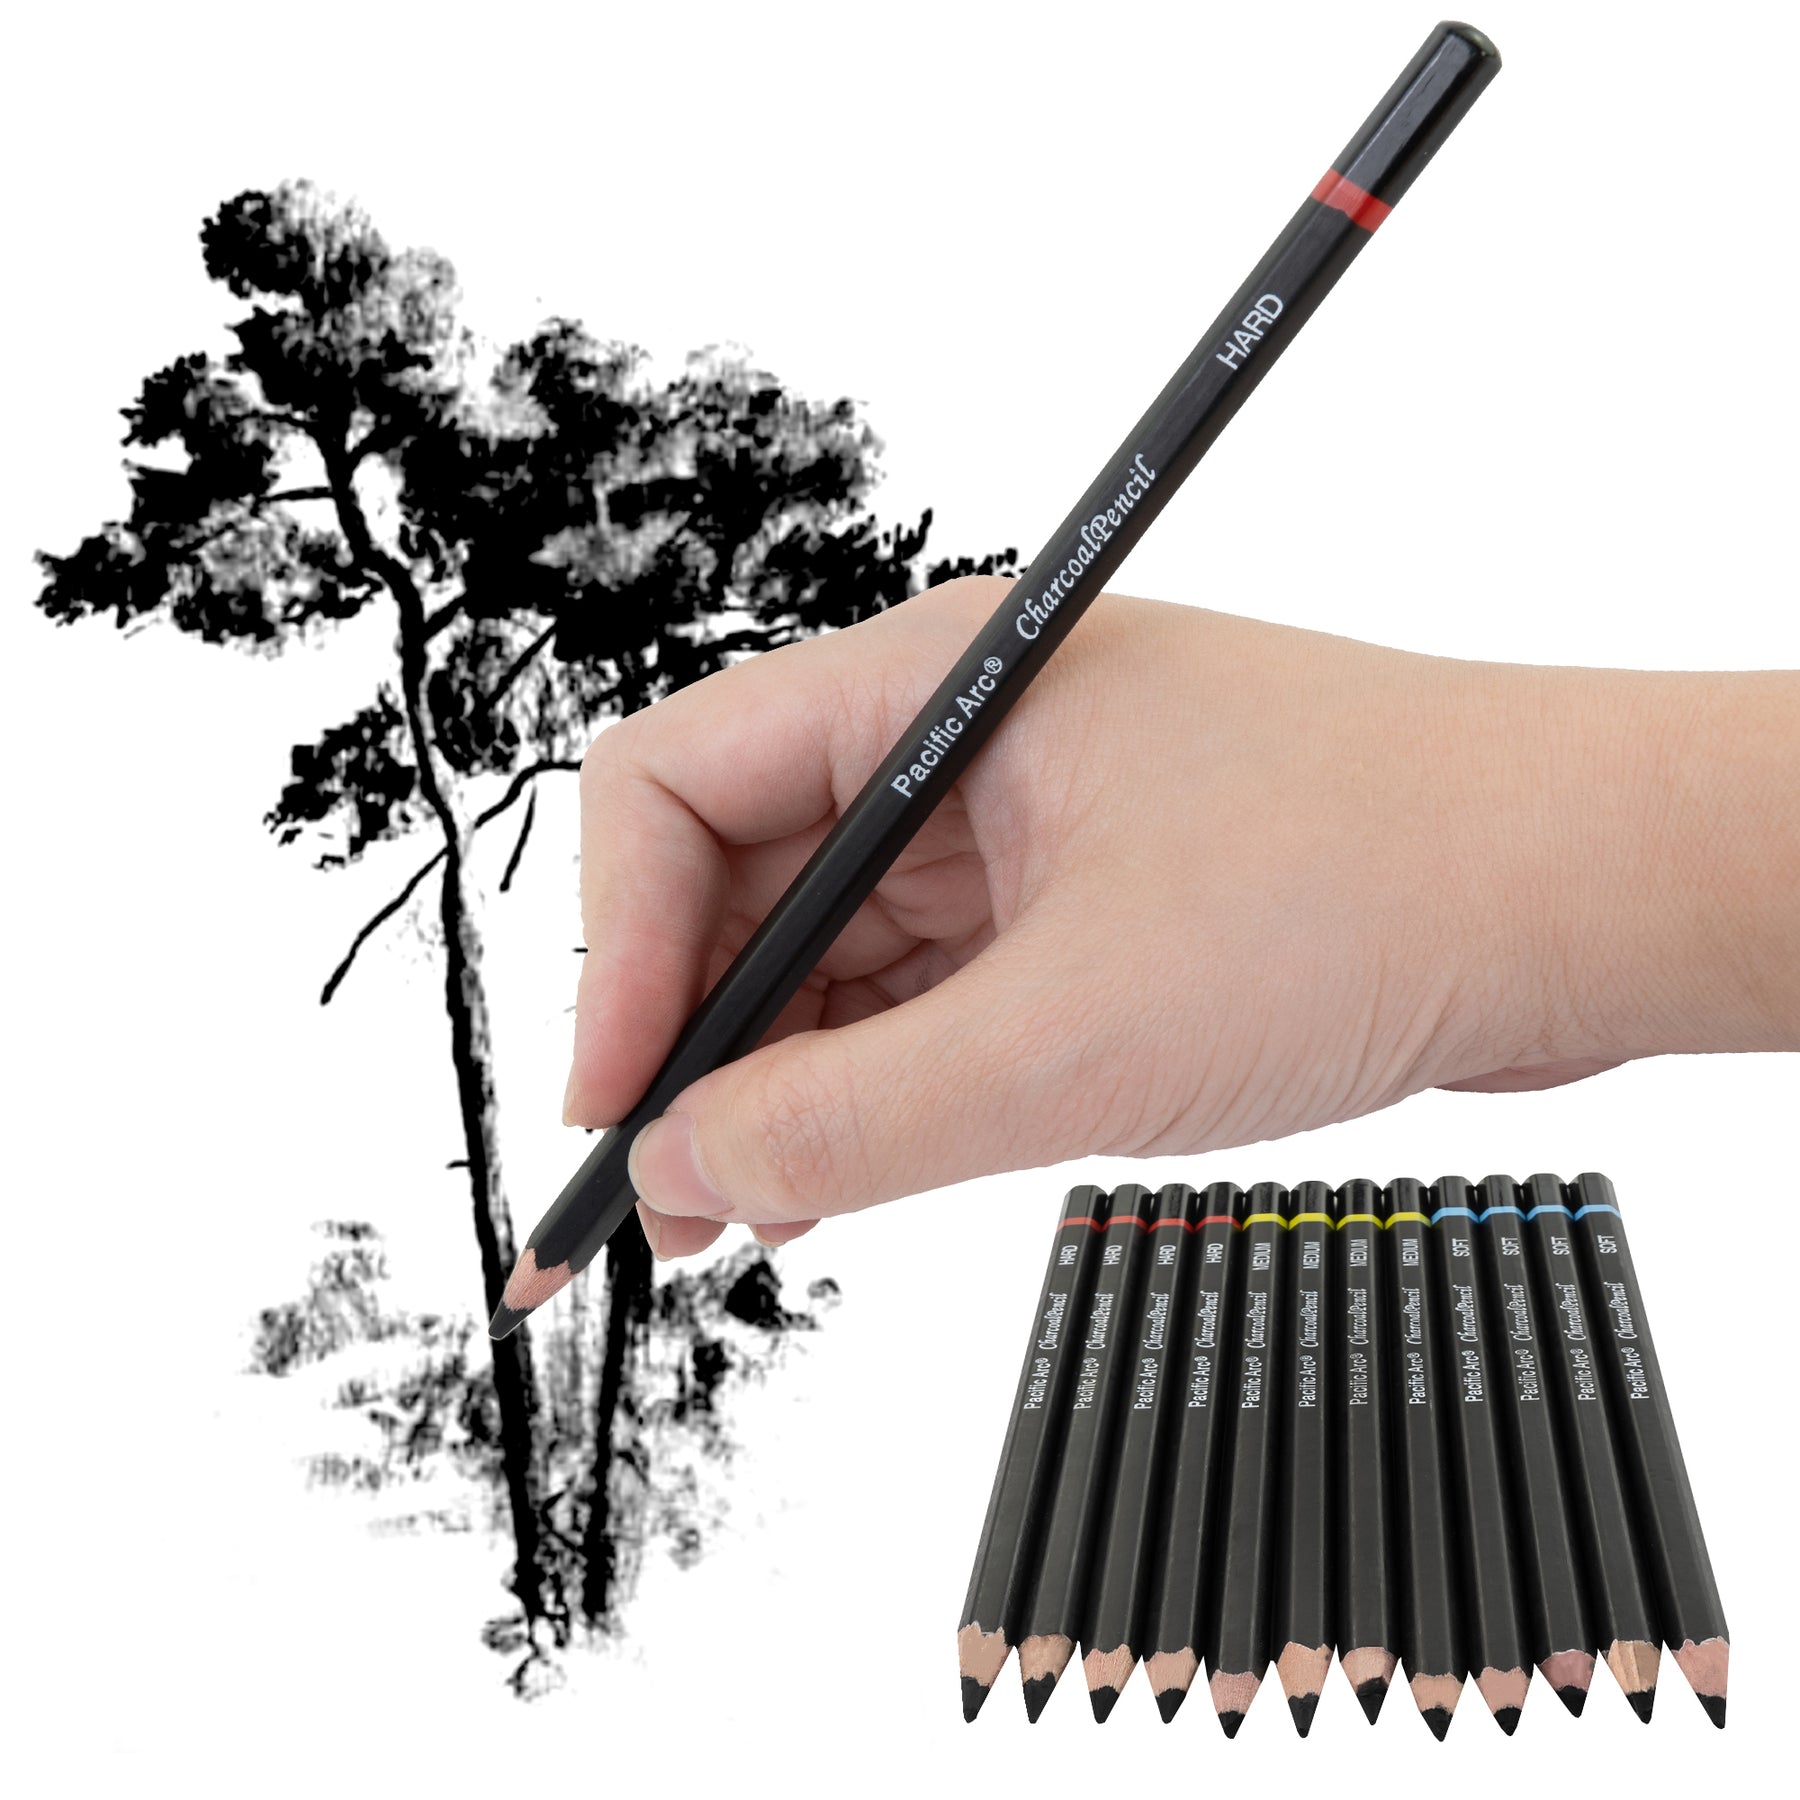 Charcoal Pencils in Art Pencils